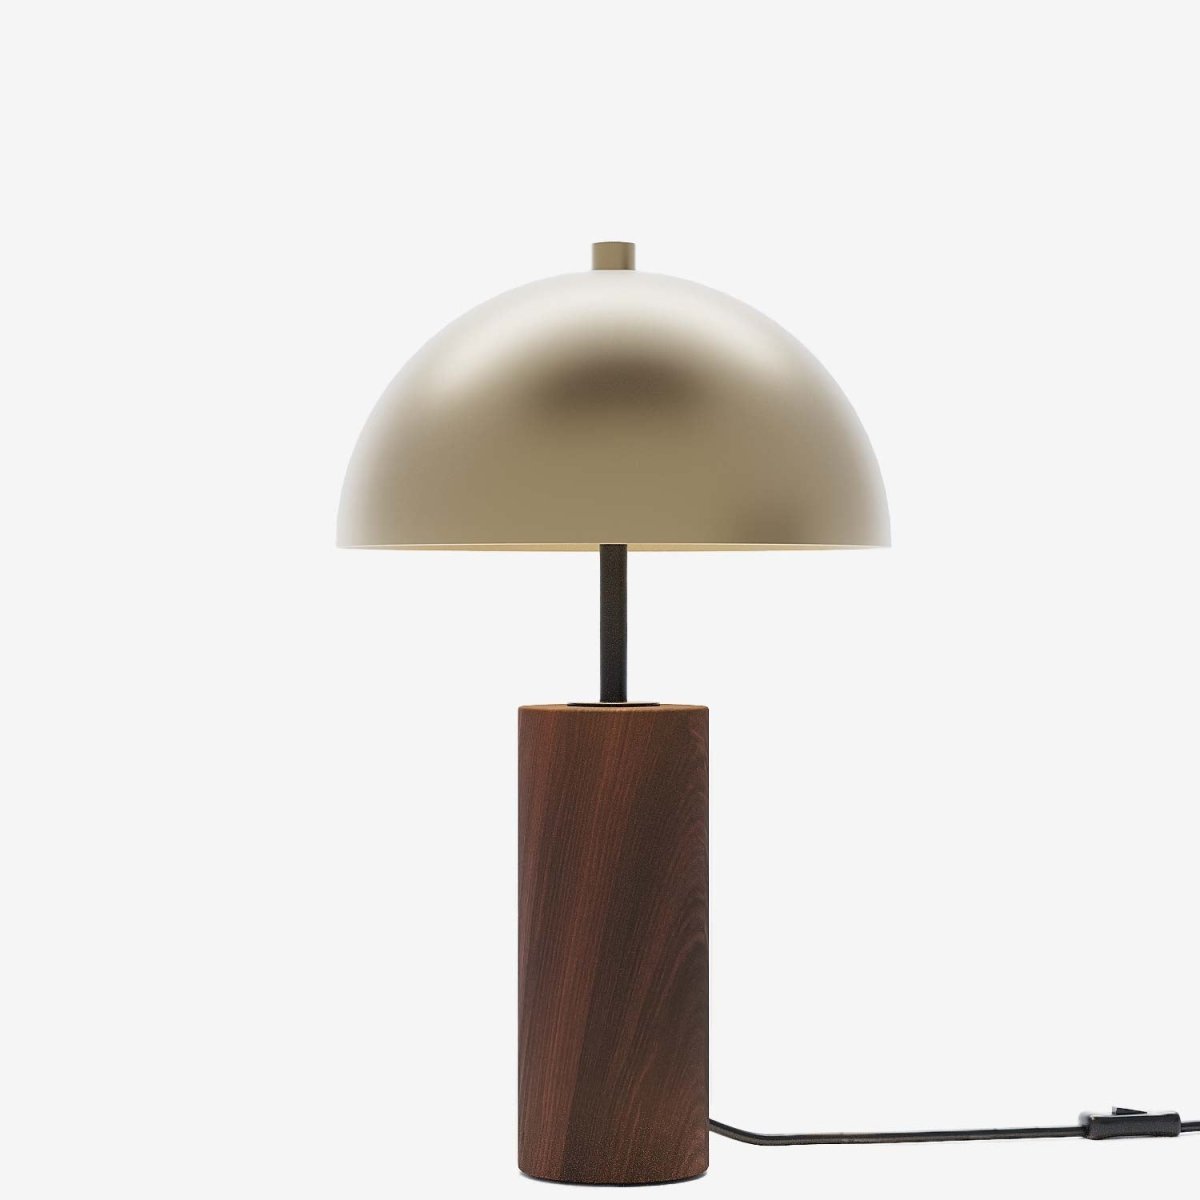 Lampe de table bois métal style industriel vintage élégant - Potiron Paris, le luminaire design de la décoration d'intérieur chic et moderne